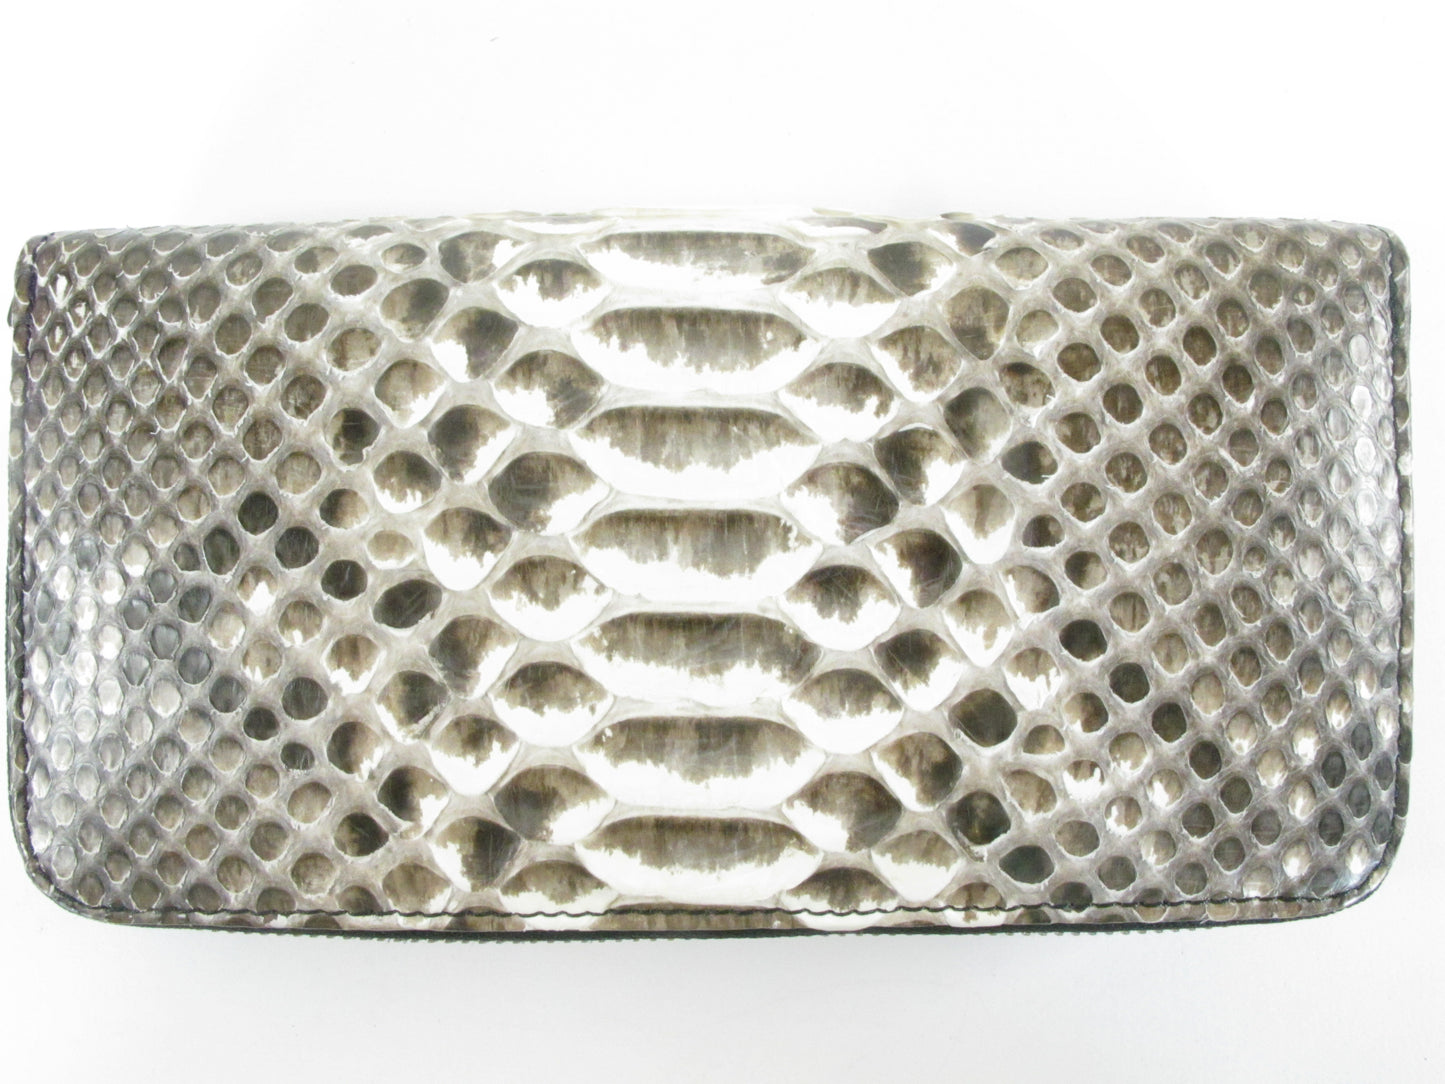 Genuine Reticulated Python Belly Skin Leather Zip Around Clutch Wallet Purse